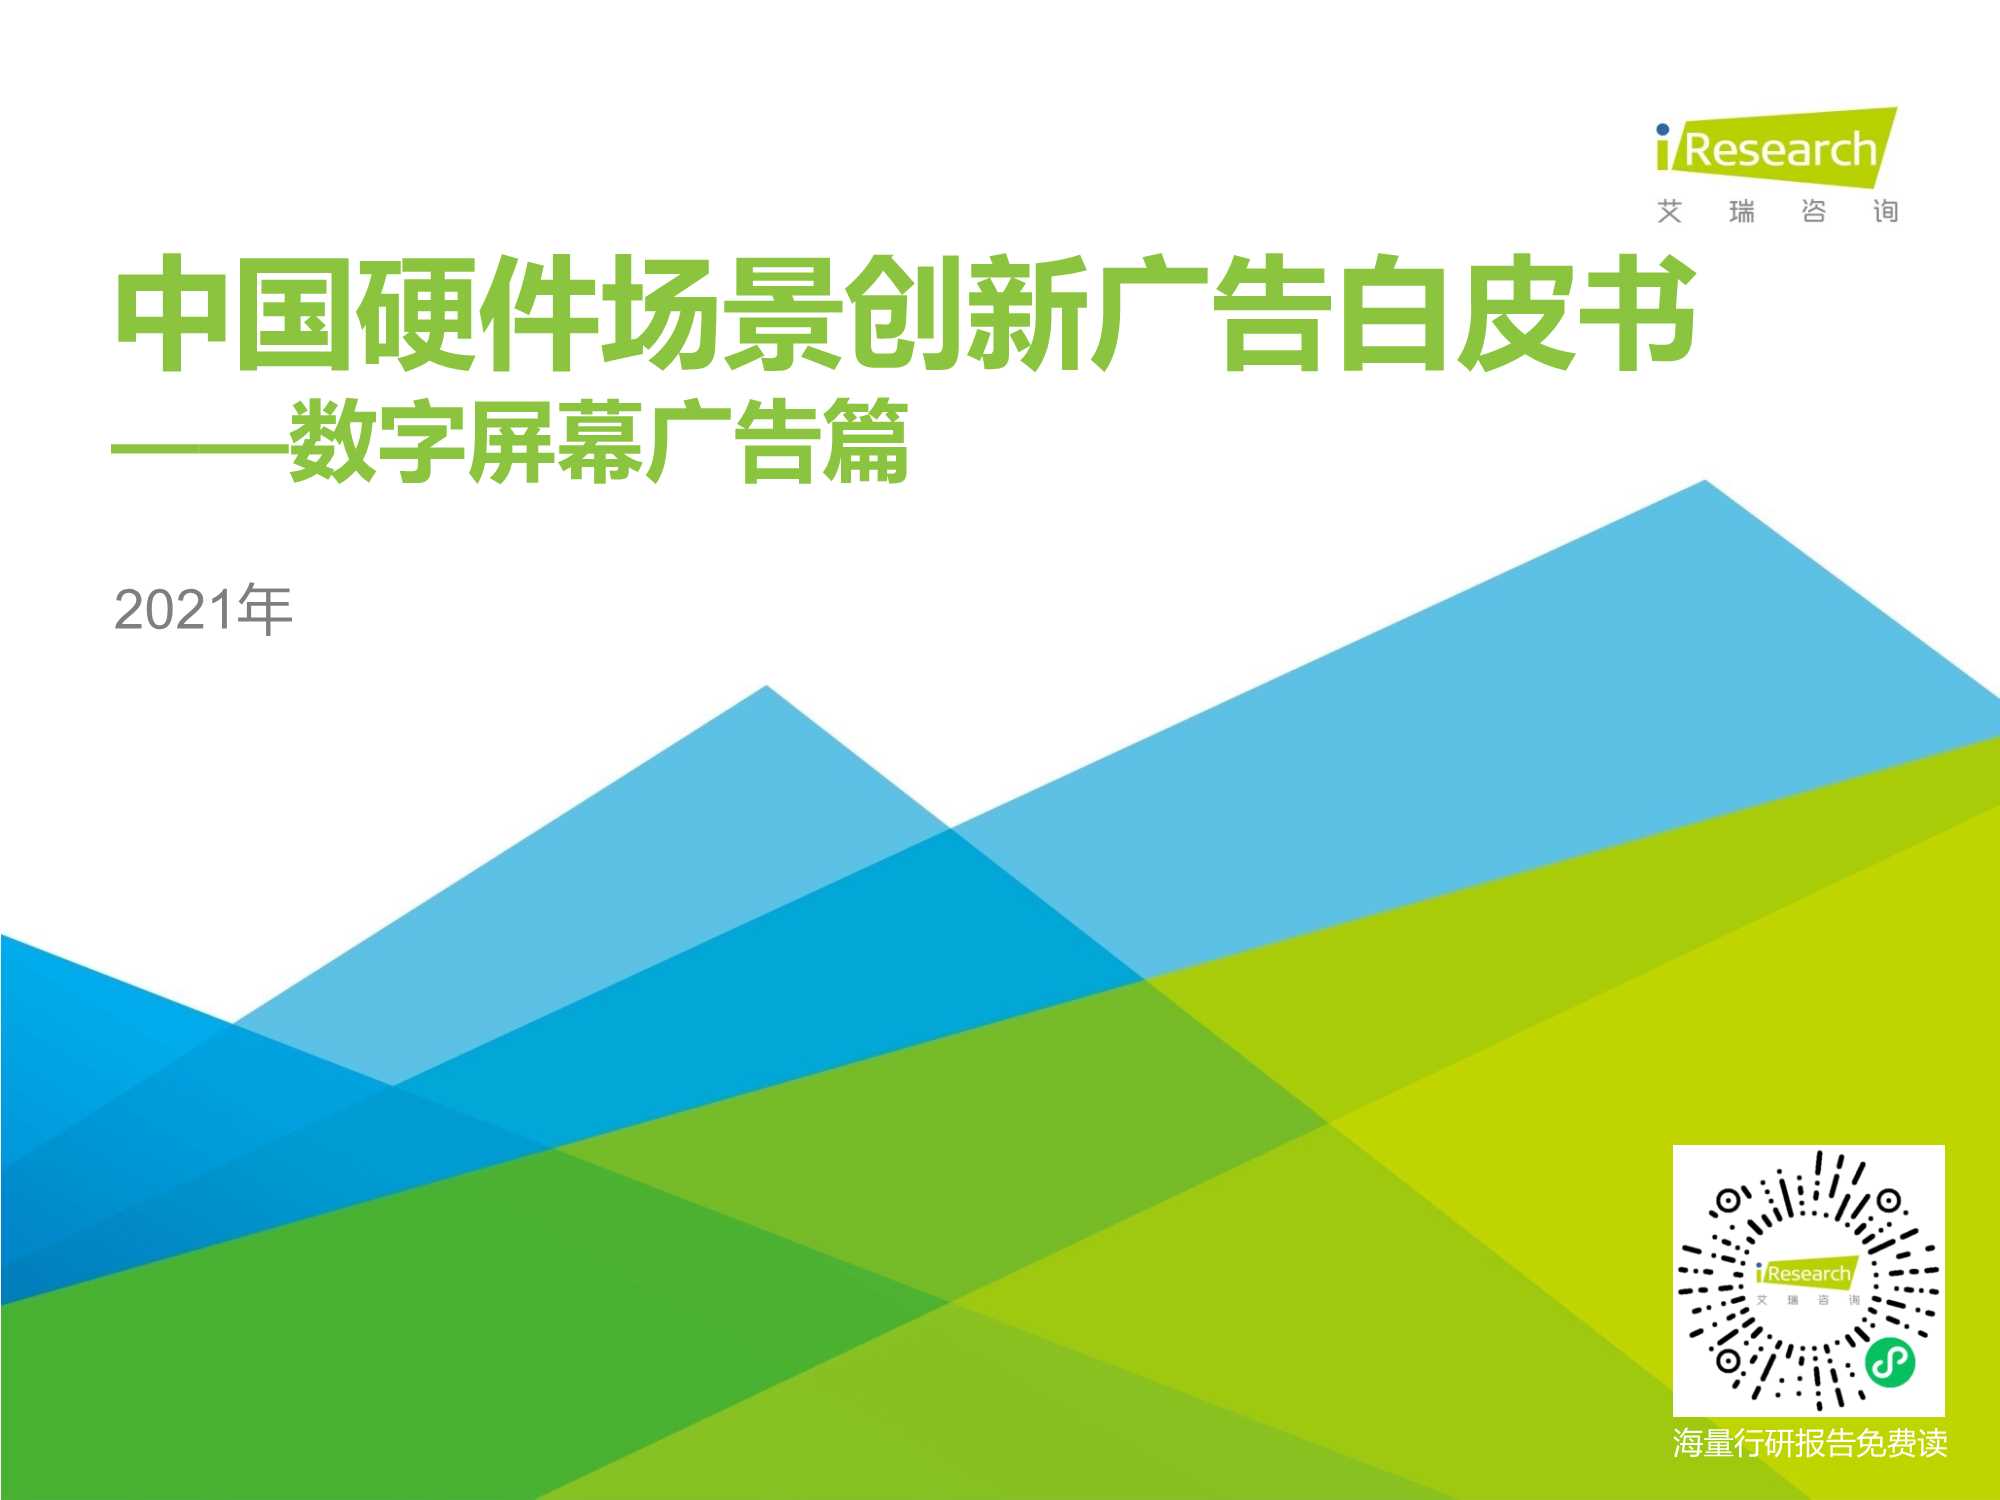 艾瑞咨询-2021年中国硬件场景创新广告白皮书—数字屏幕广告篇-2021.08-54页